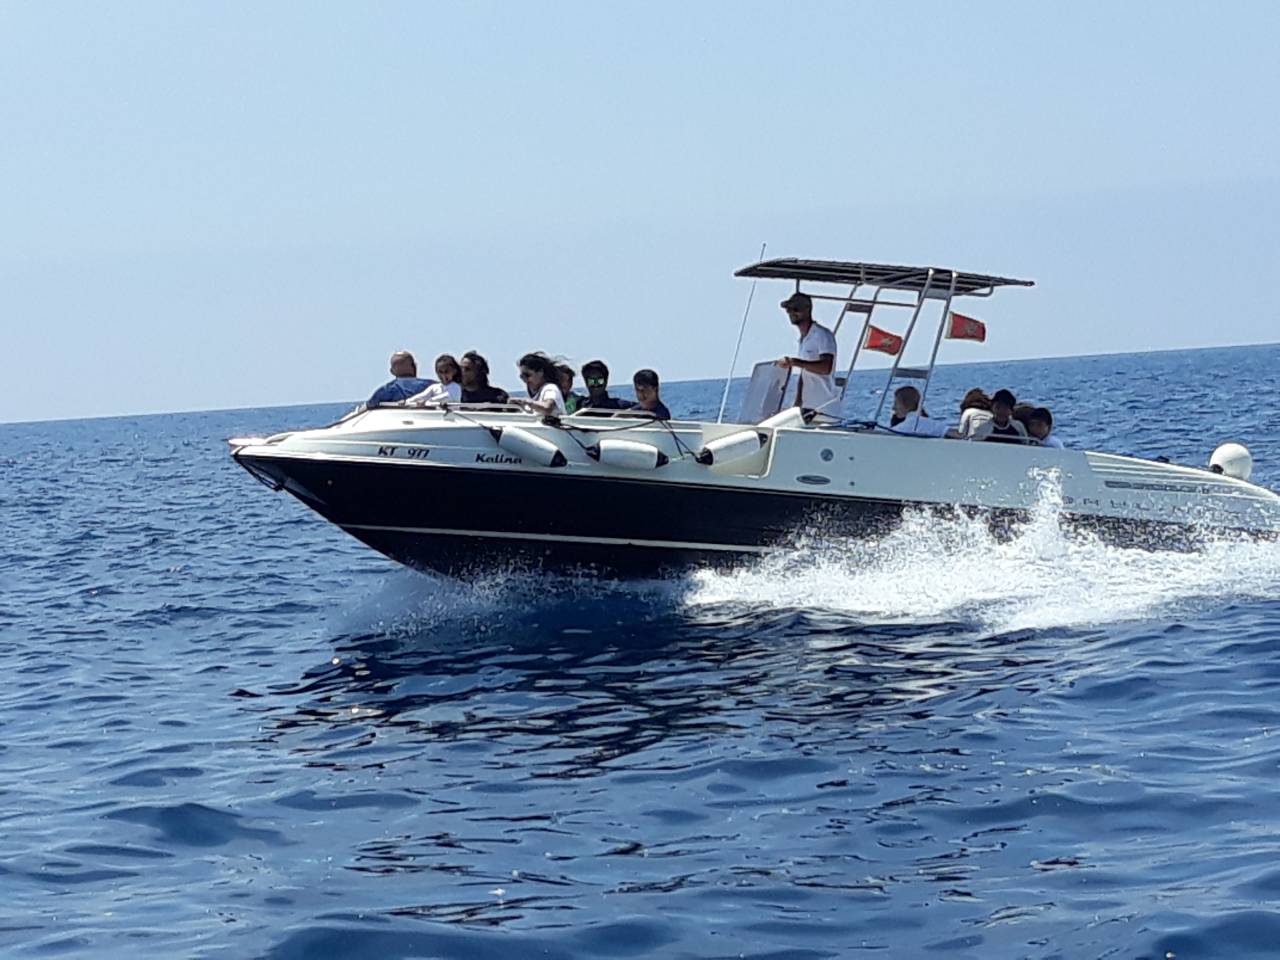 kotor bay private boat tour